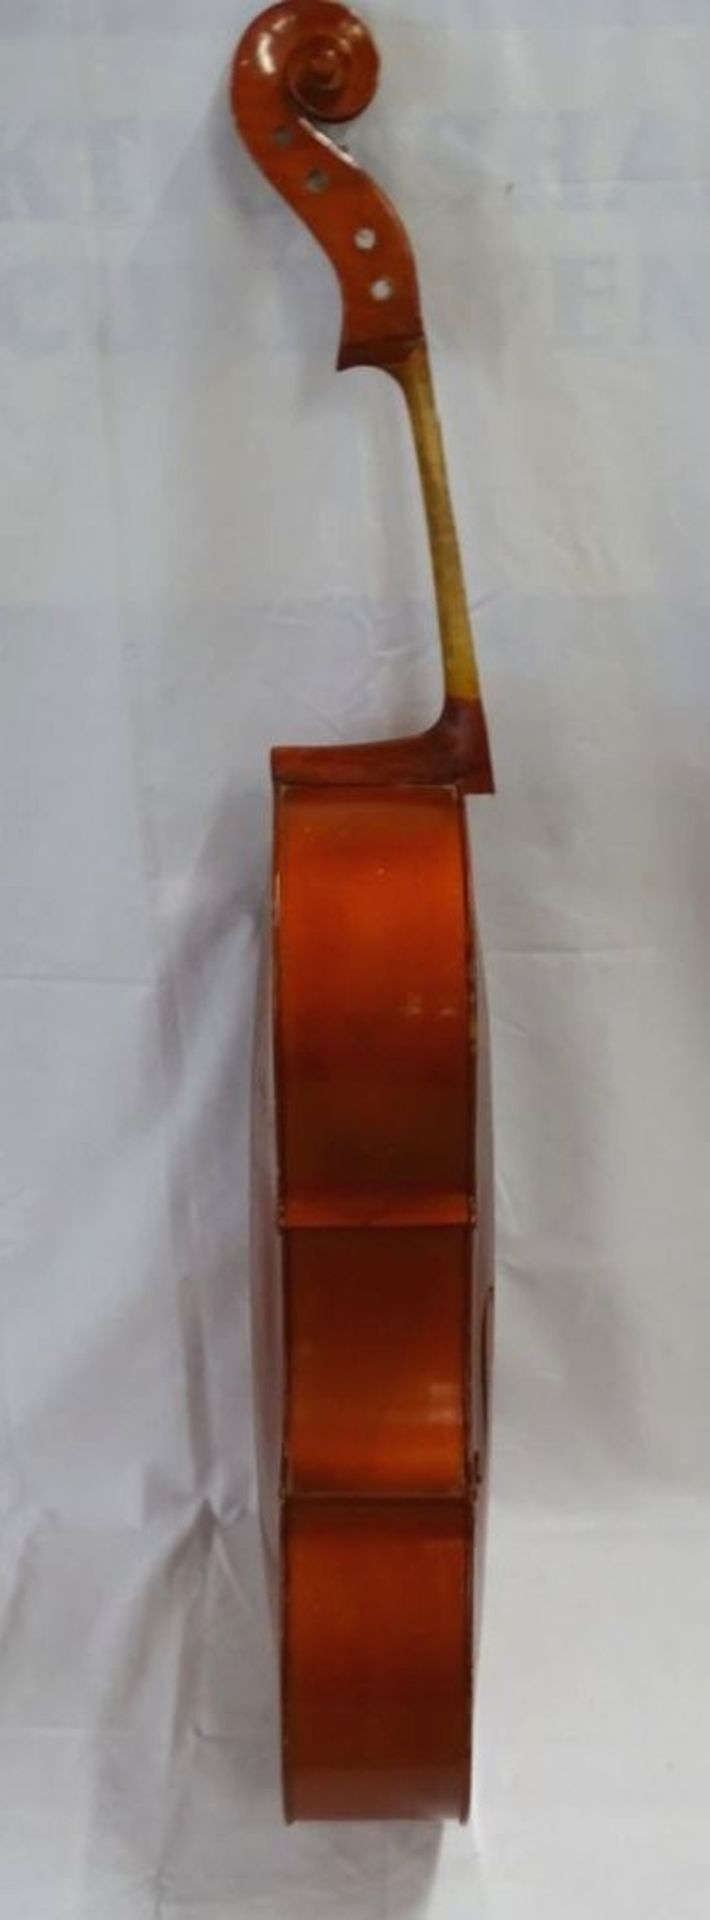 Violoncello, restaurierungs bedürftig, Korpus keine Risse, H-122cm.- - -22.61 % buyer's premium on - Bild 4 aus 7